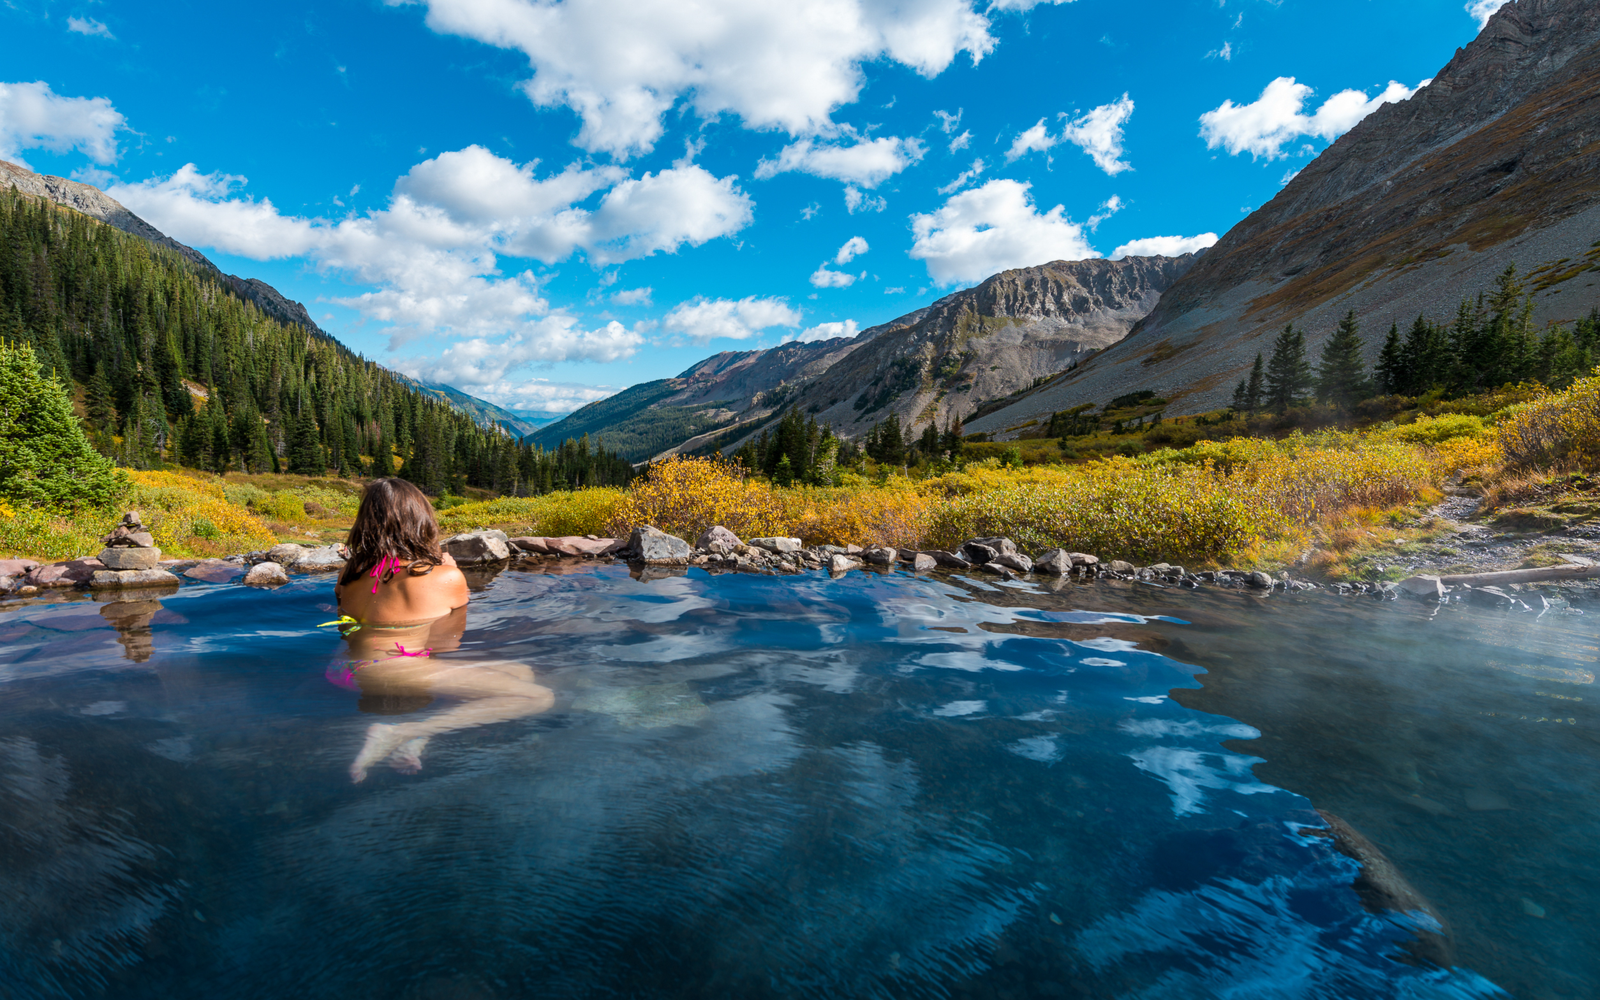 15 Best Hot Springs in Colorado in 2022